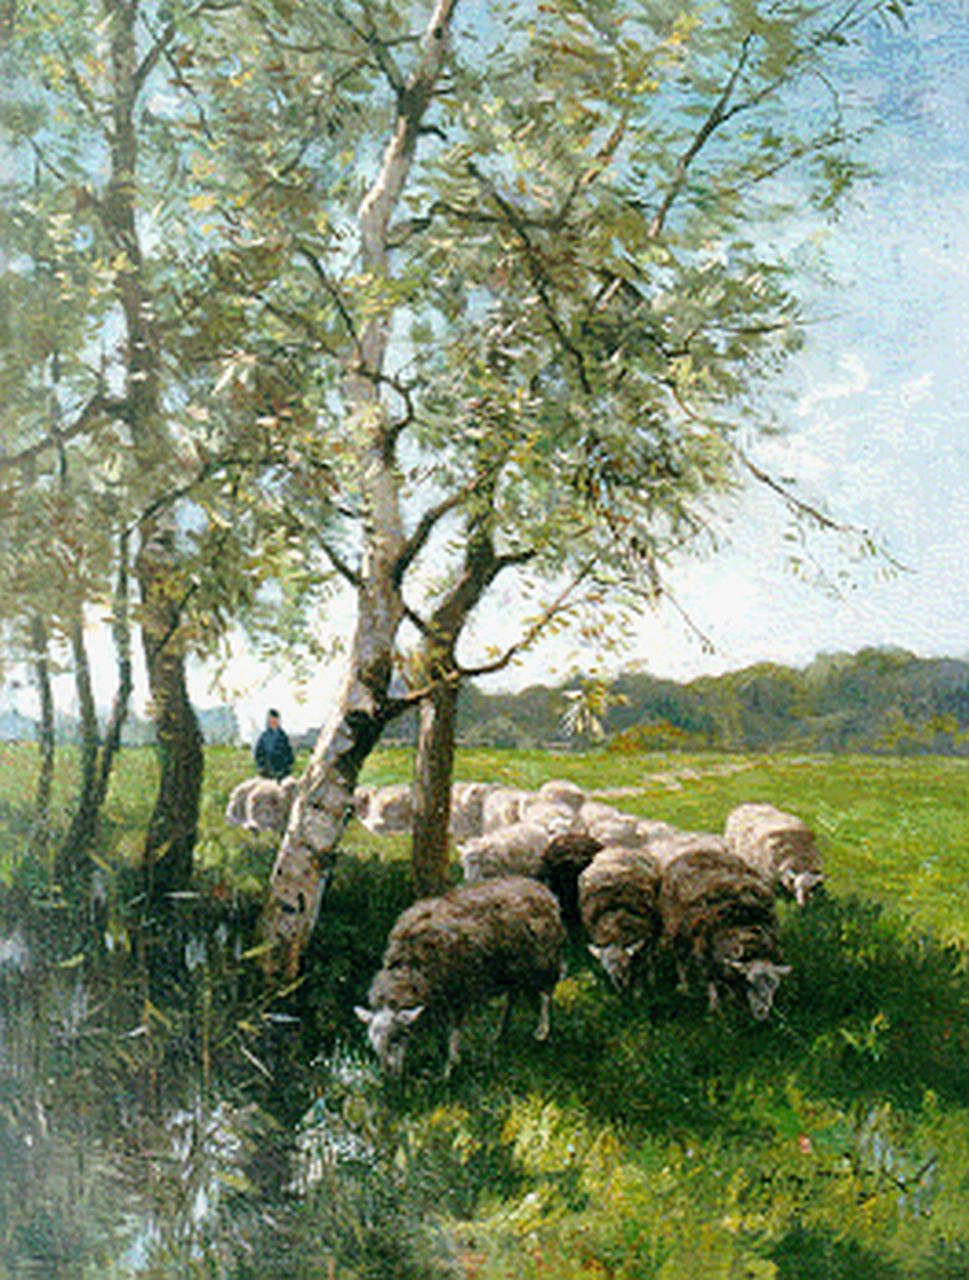 Steelink jr. W.  | Willem Steelink jr., Herder met zijn kudde, olieverf op doek 41,3 x 31,6 cm, gesigneerd rechtsonder